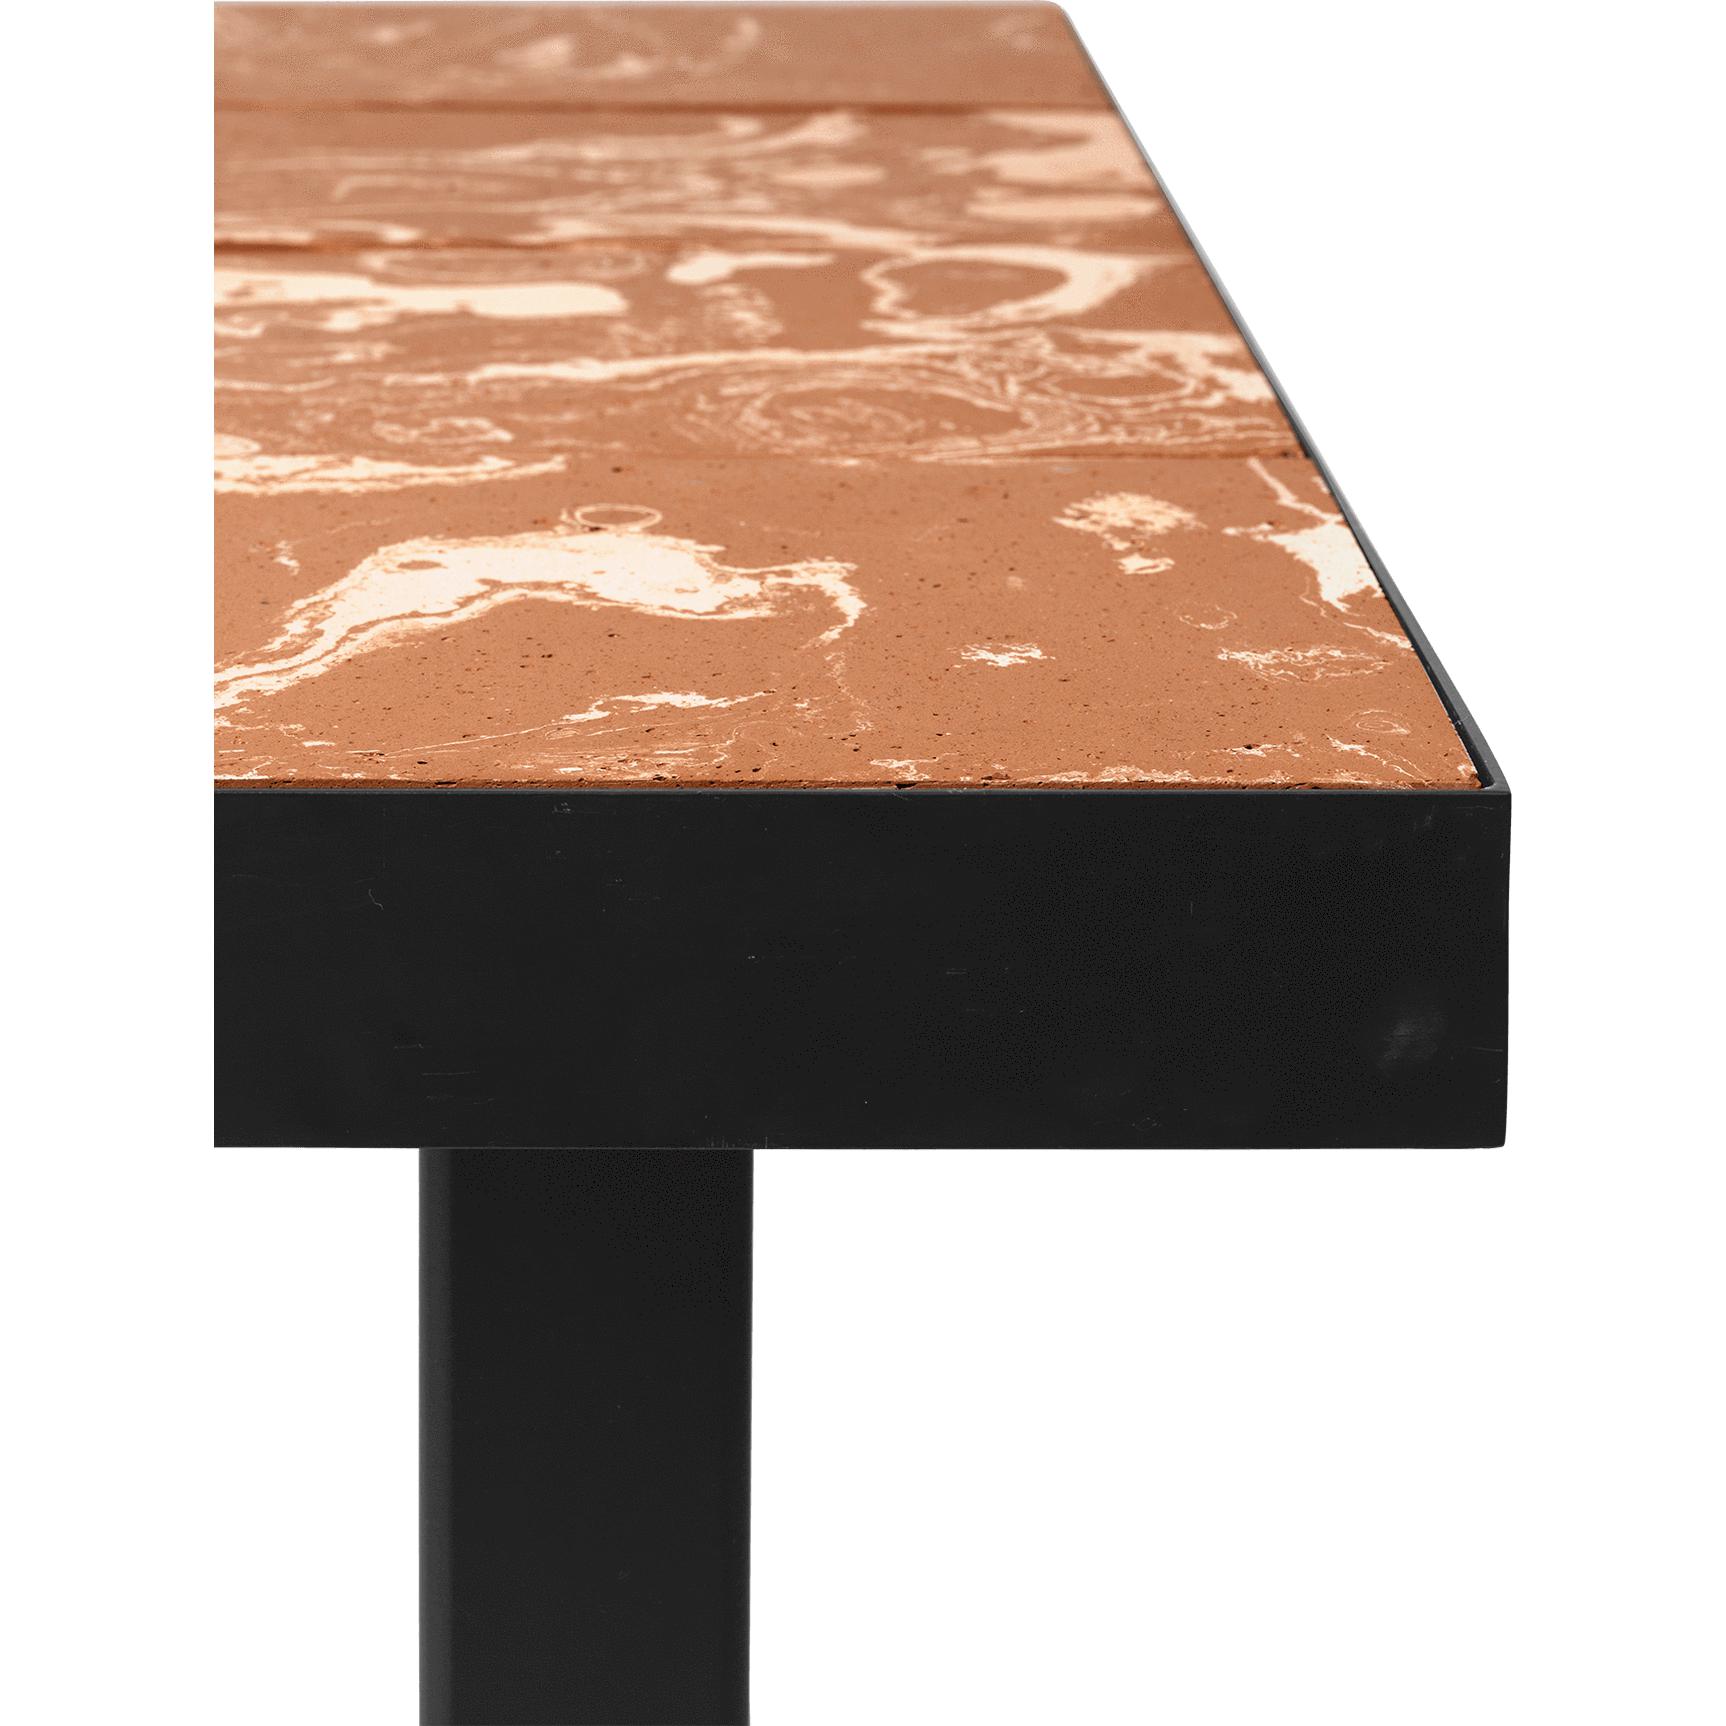 Ferm Living Flod Tiles Dining Table, Terracotta/Black